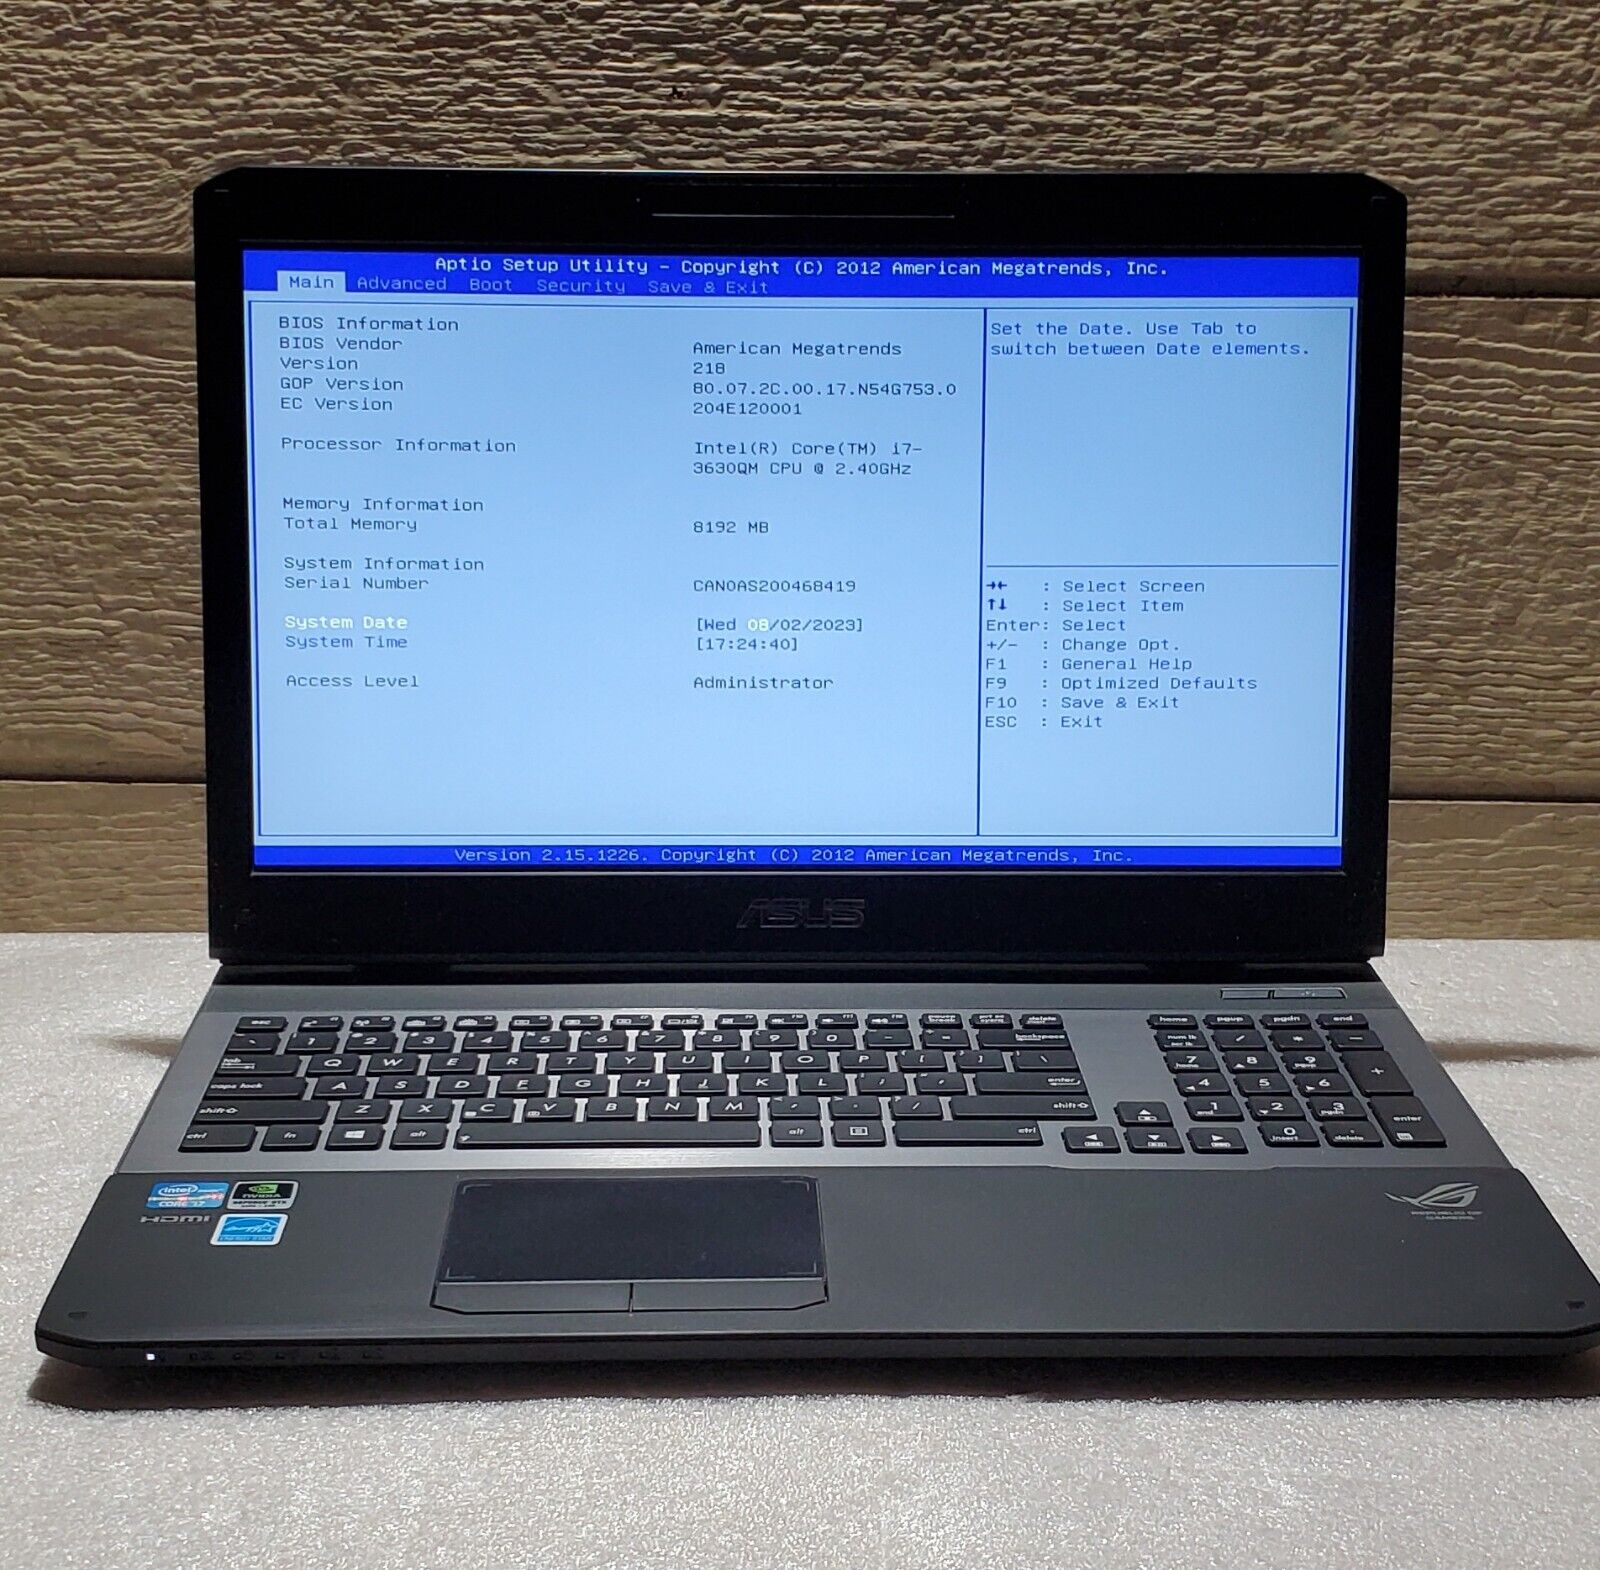 ASUS ROG G75V 17.3” Gaming Laptop i7-3630QM 2.40GHz, 8GB RAM, G75VW No HDD- Read